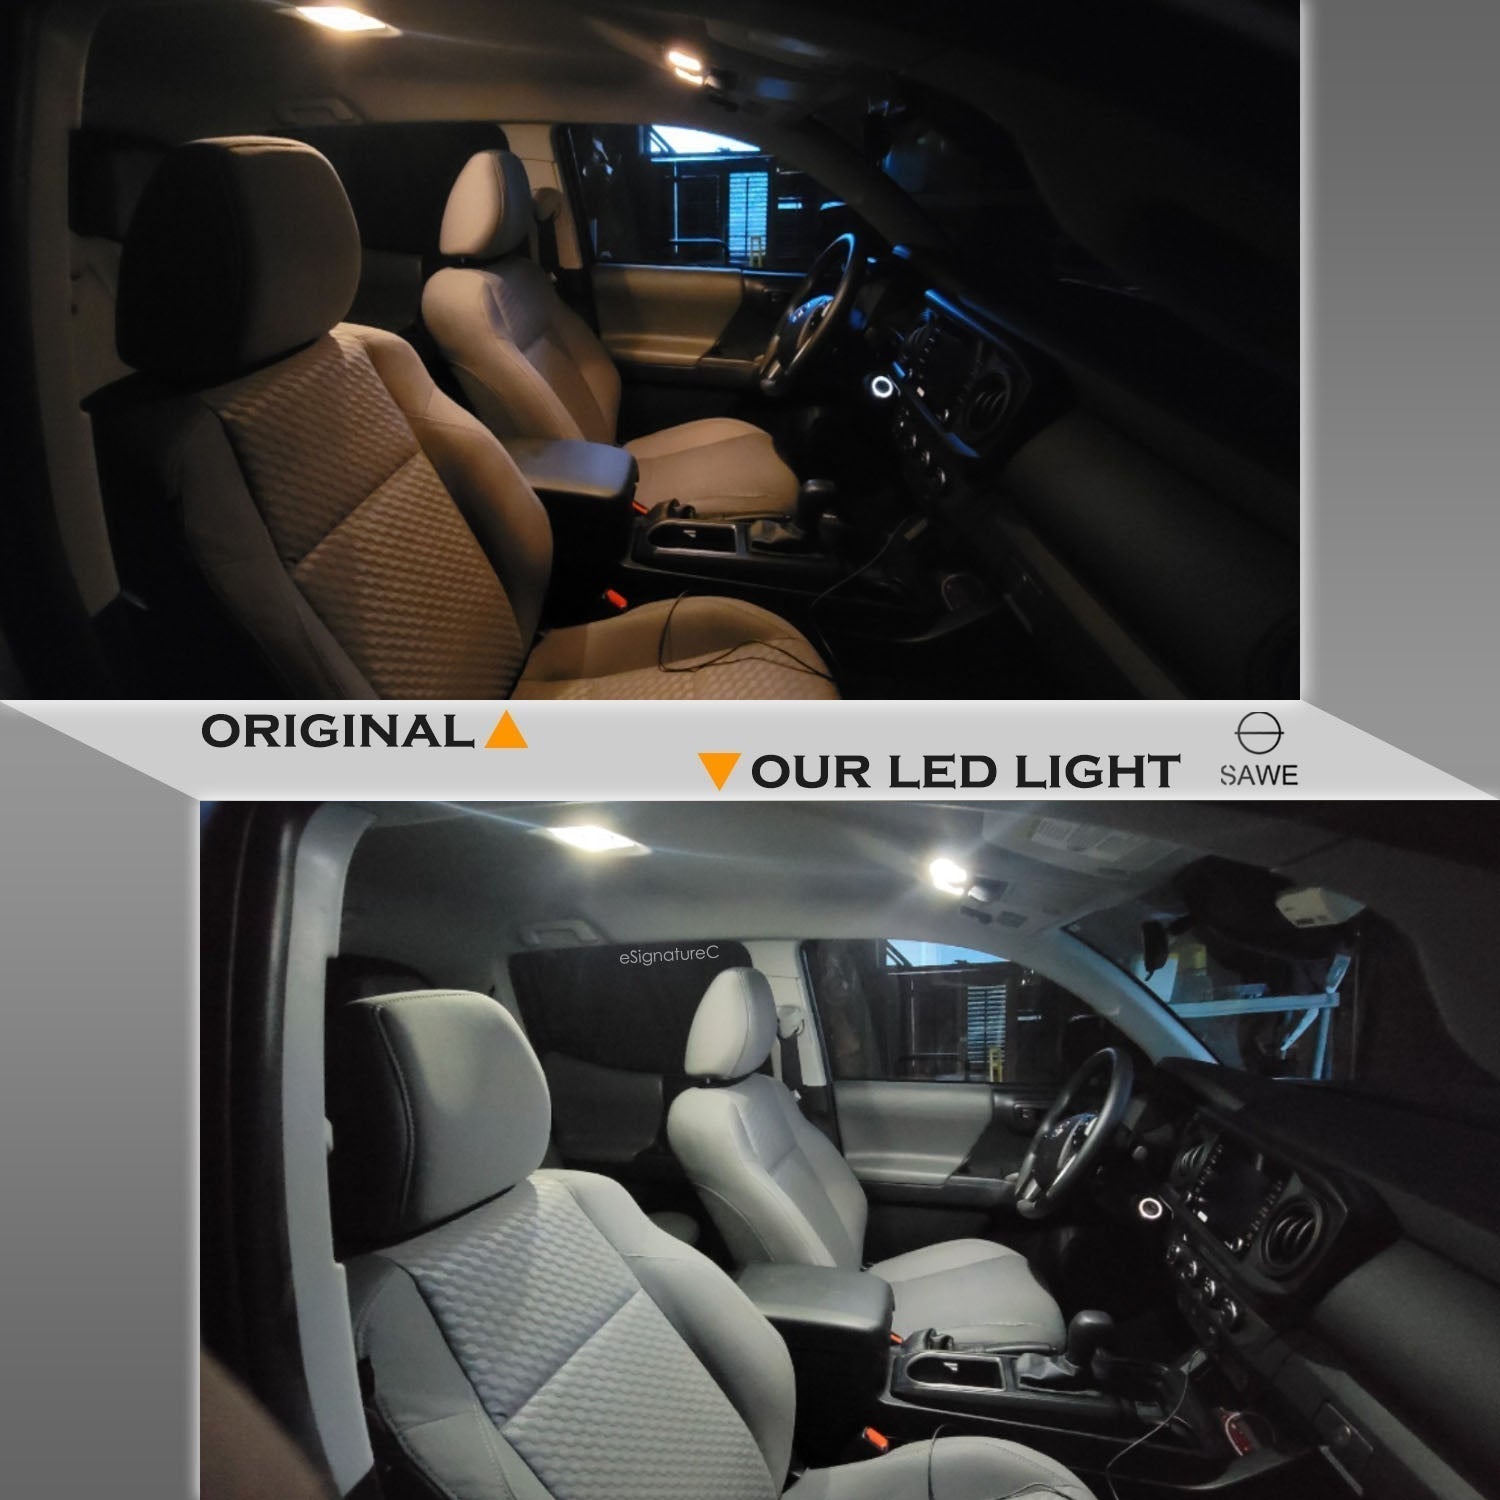 For Ford Ranger Interior LED Lights - Dome & Map Light Bulbs Package Kit for 1998 - 2011 - White